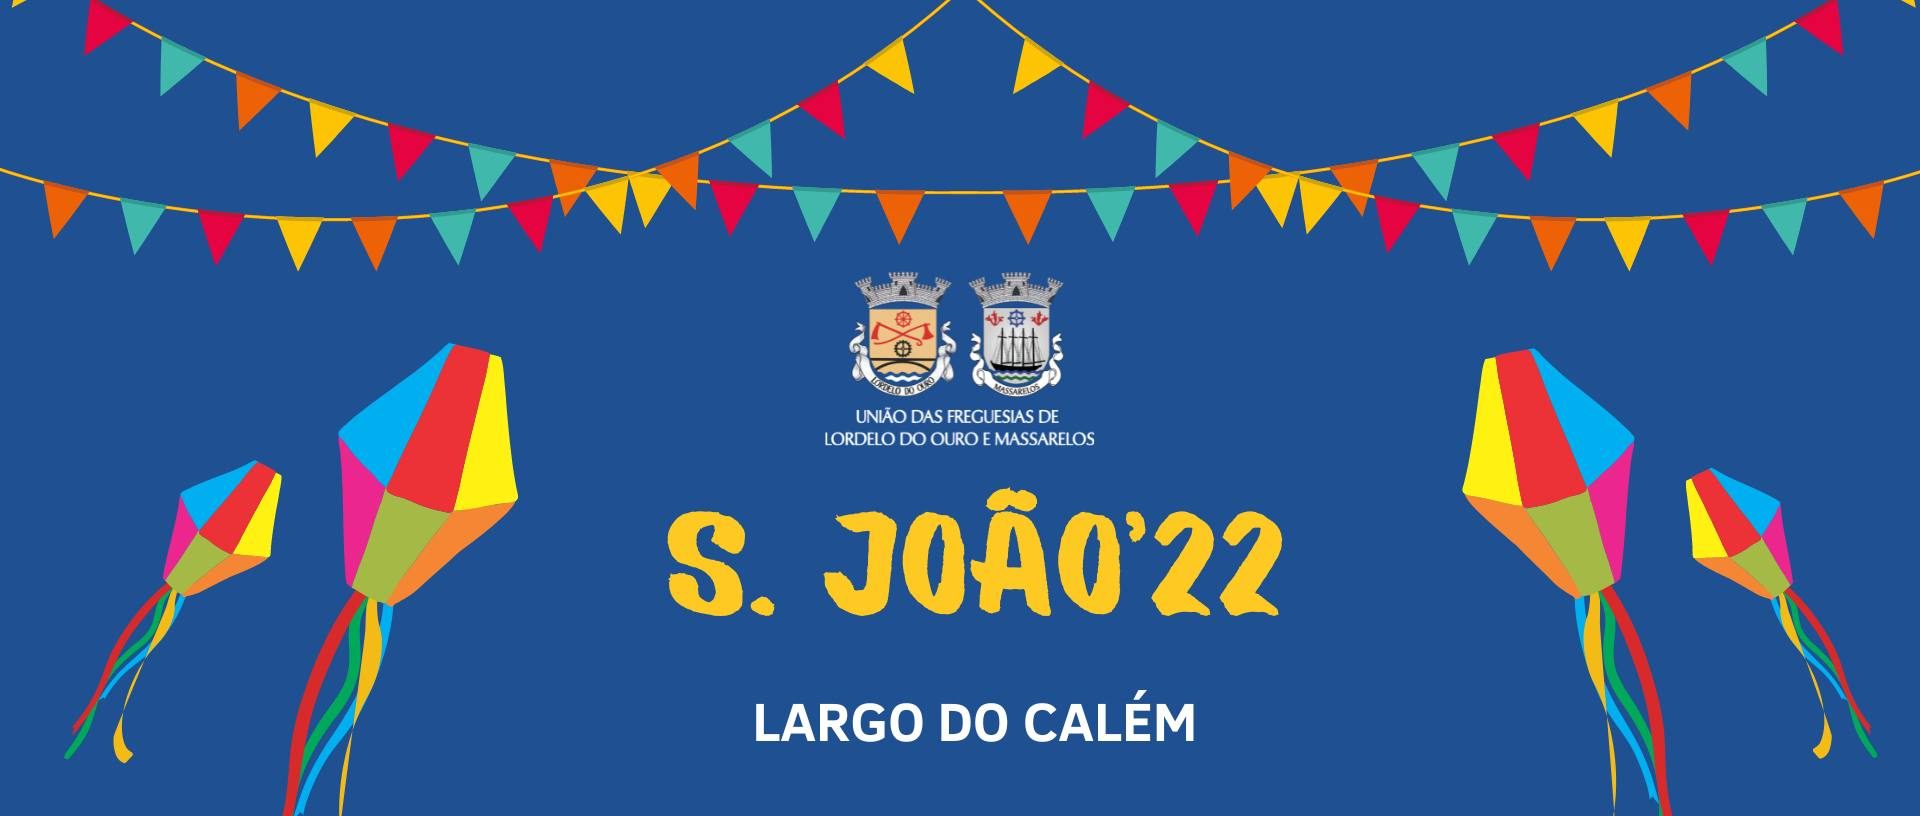 S. João'22 - Largo do Calém